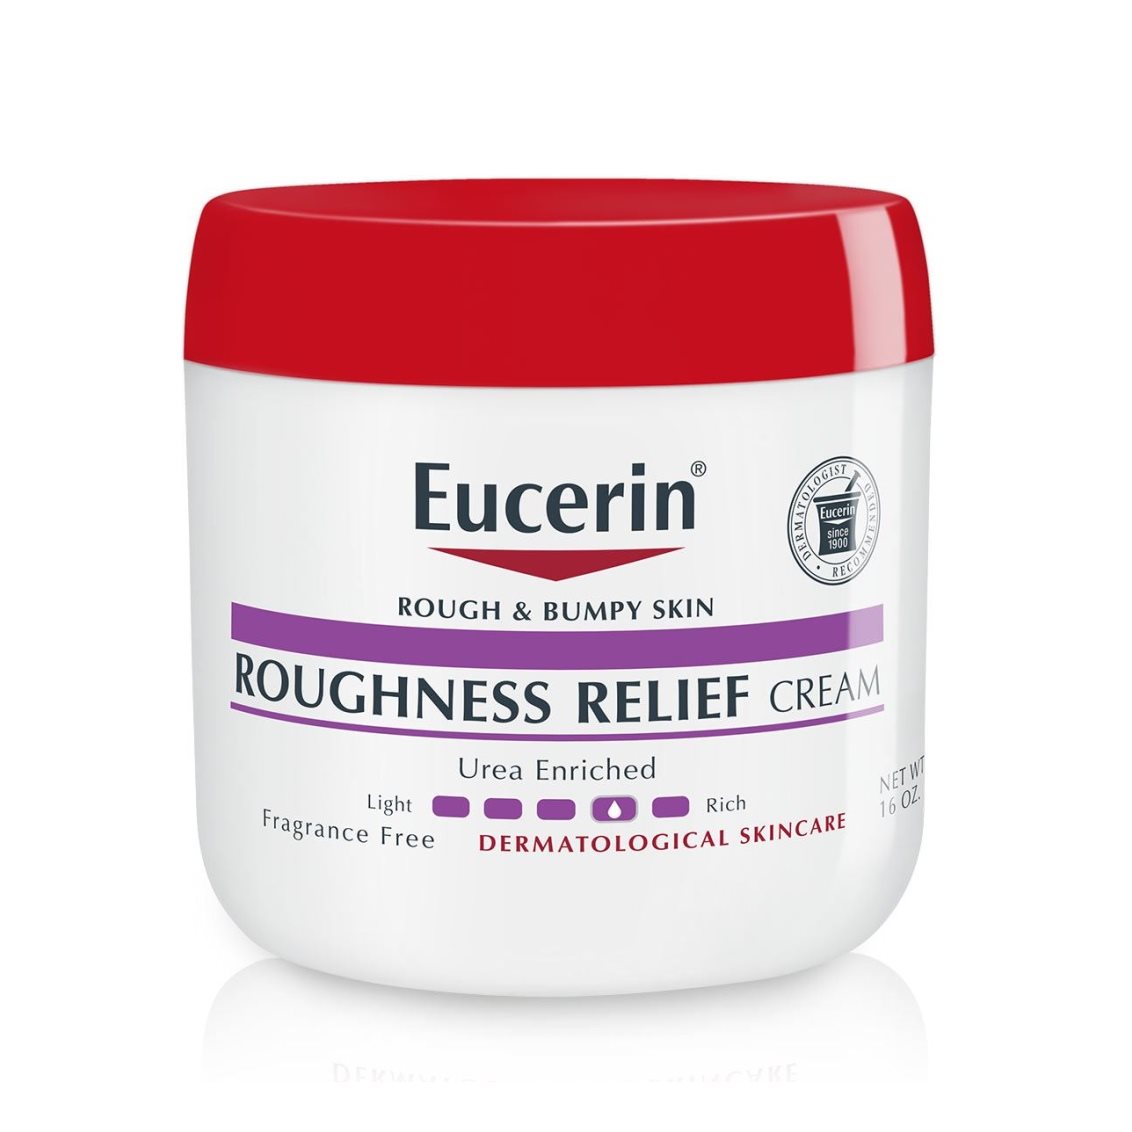 Roughness Relief Cream